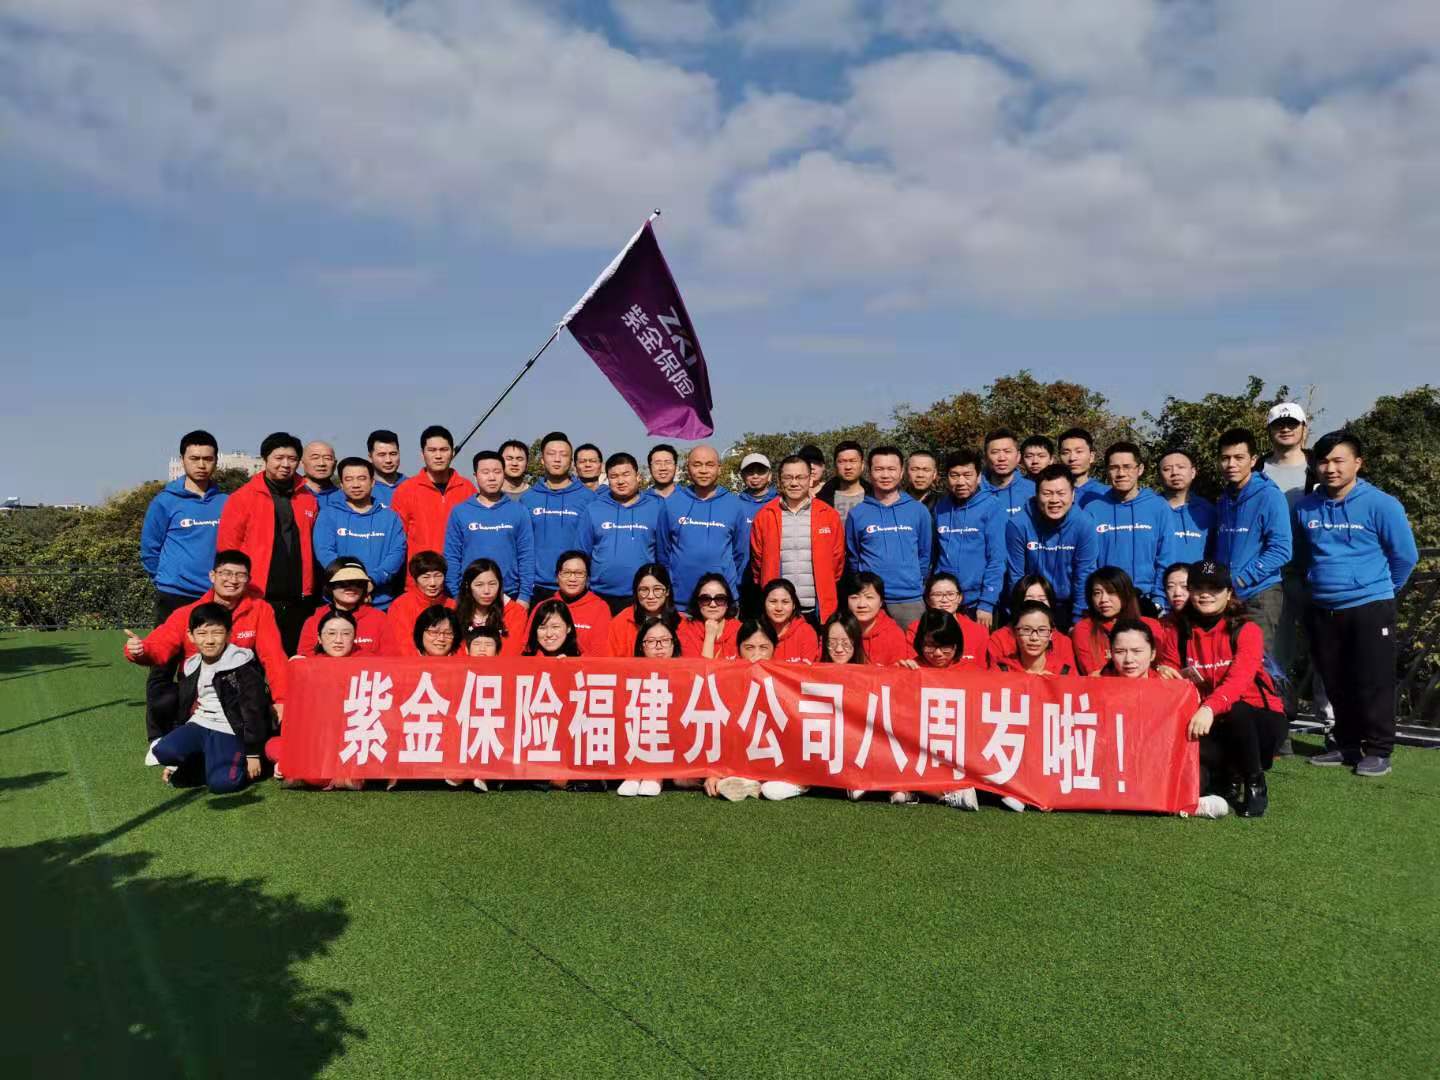 紫金财险福建分公司工会组织开展成立八周年户外烧烤活动 .jpg